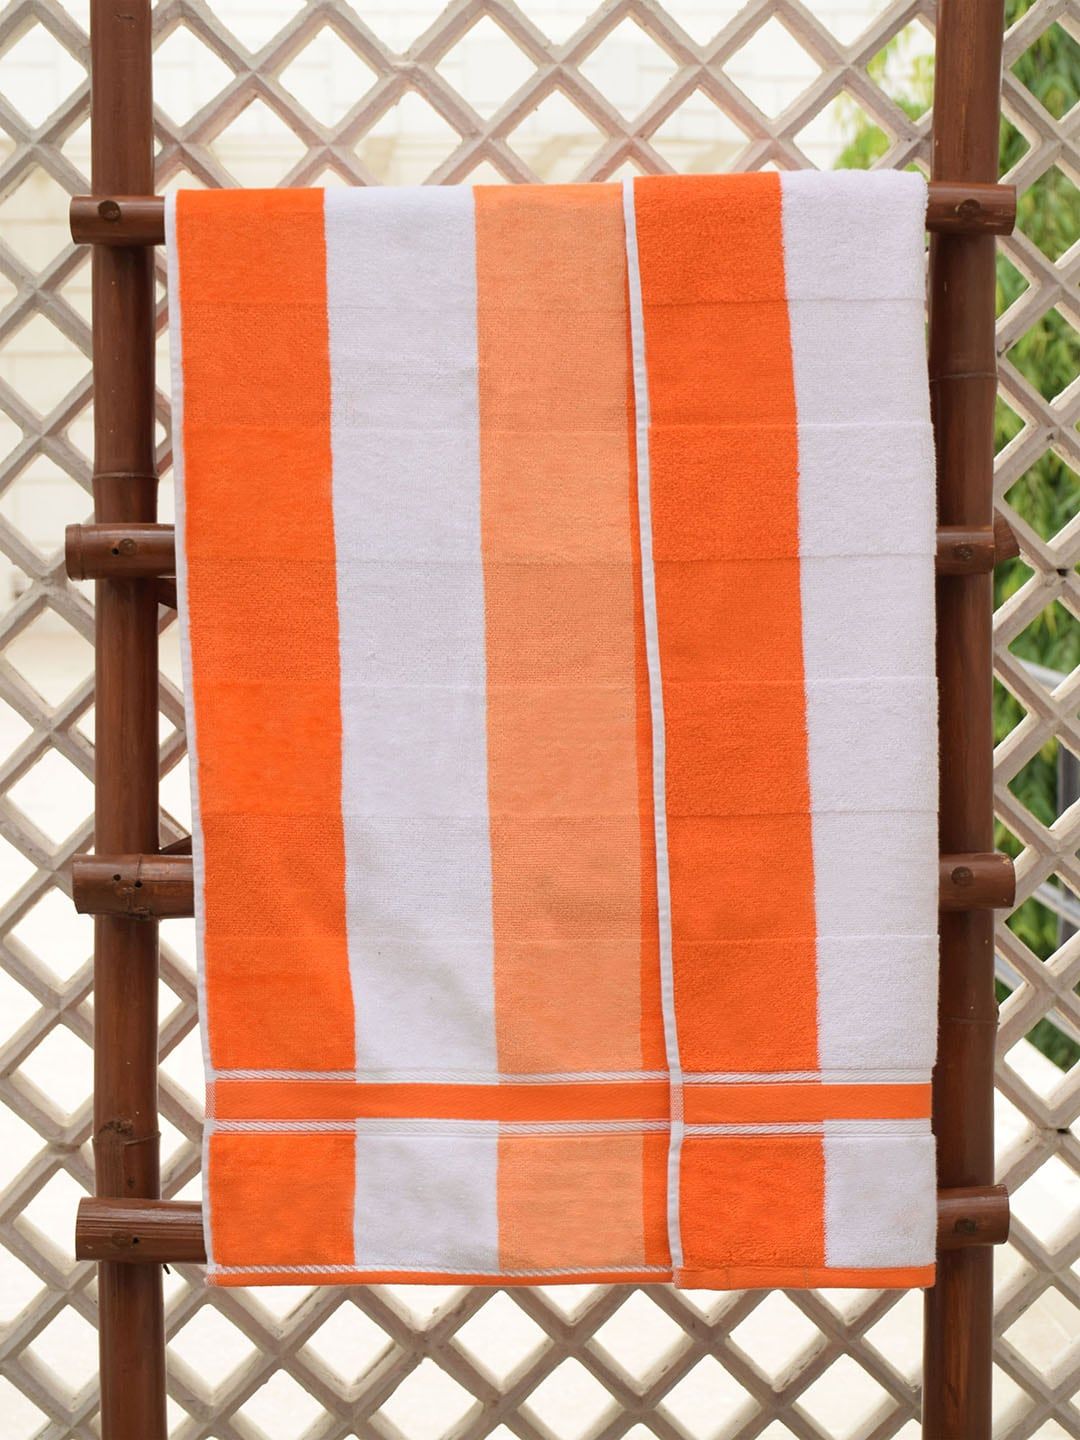 Avira Home Orange & White Striped Cotton 480 GSM Bath Towel Price in India